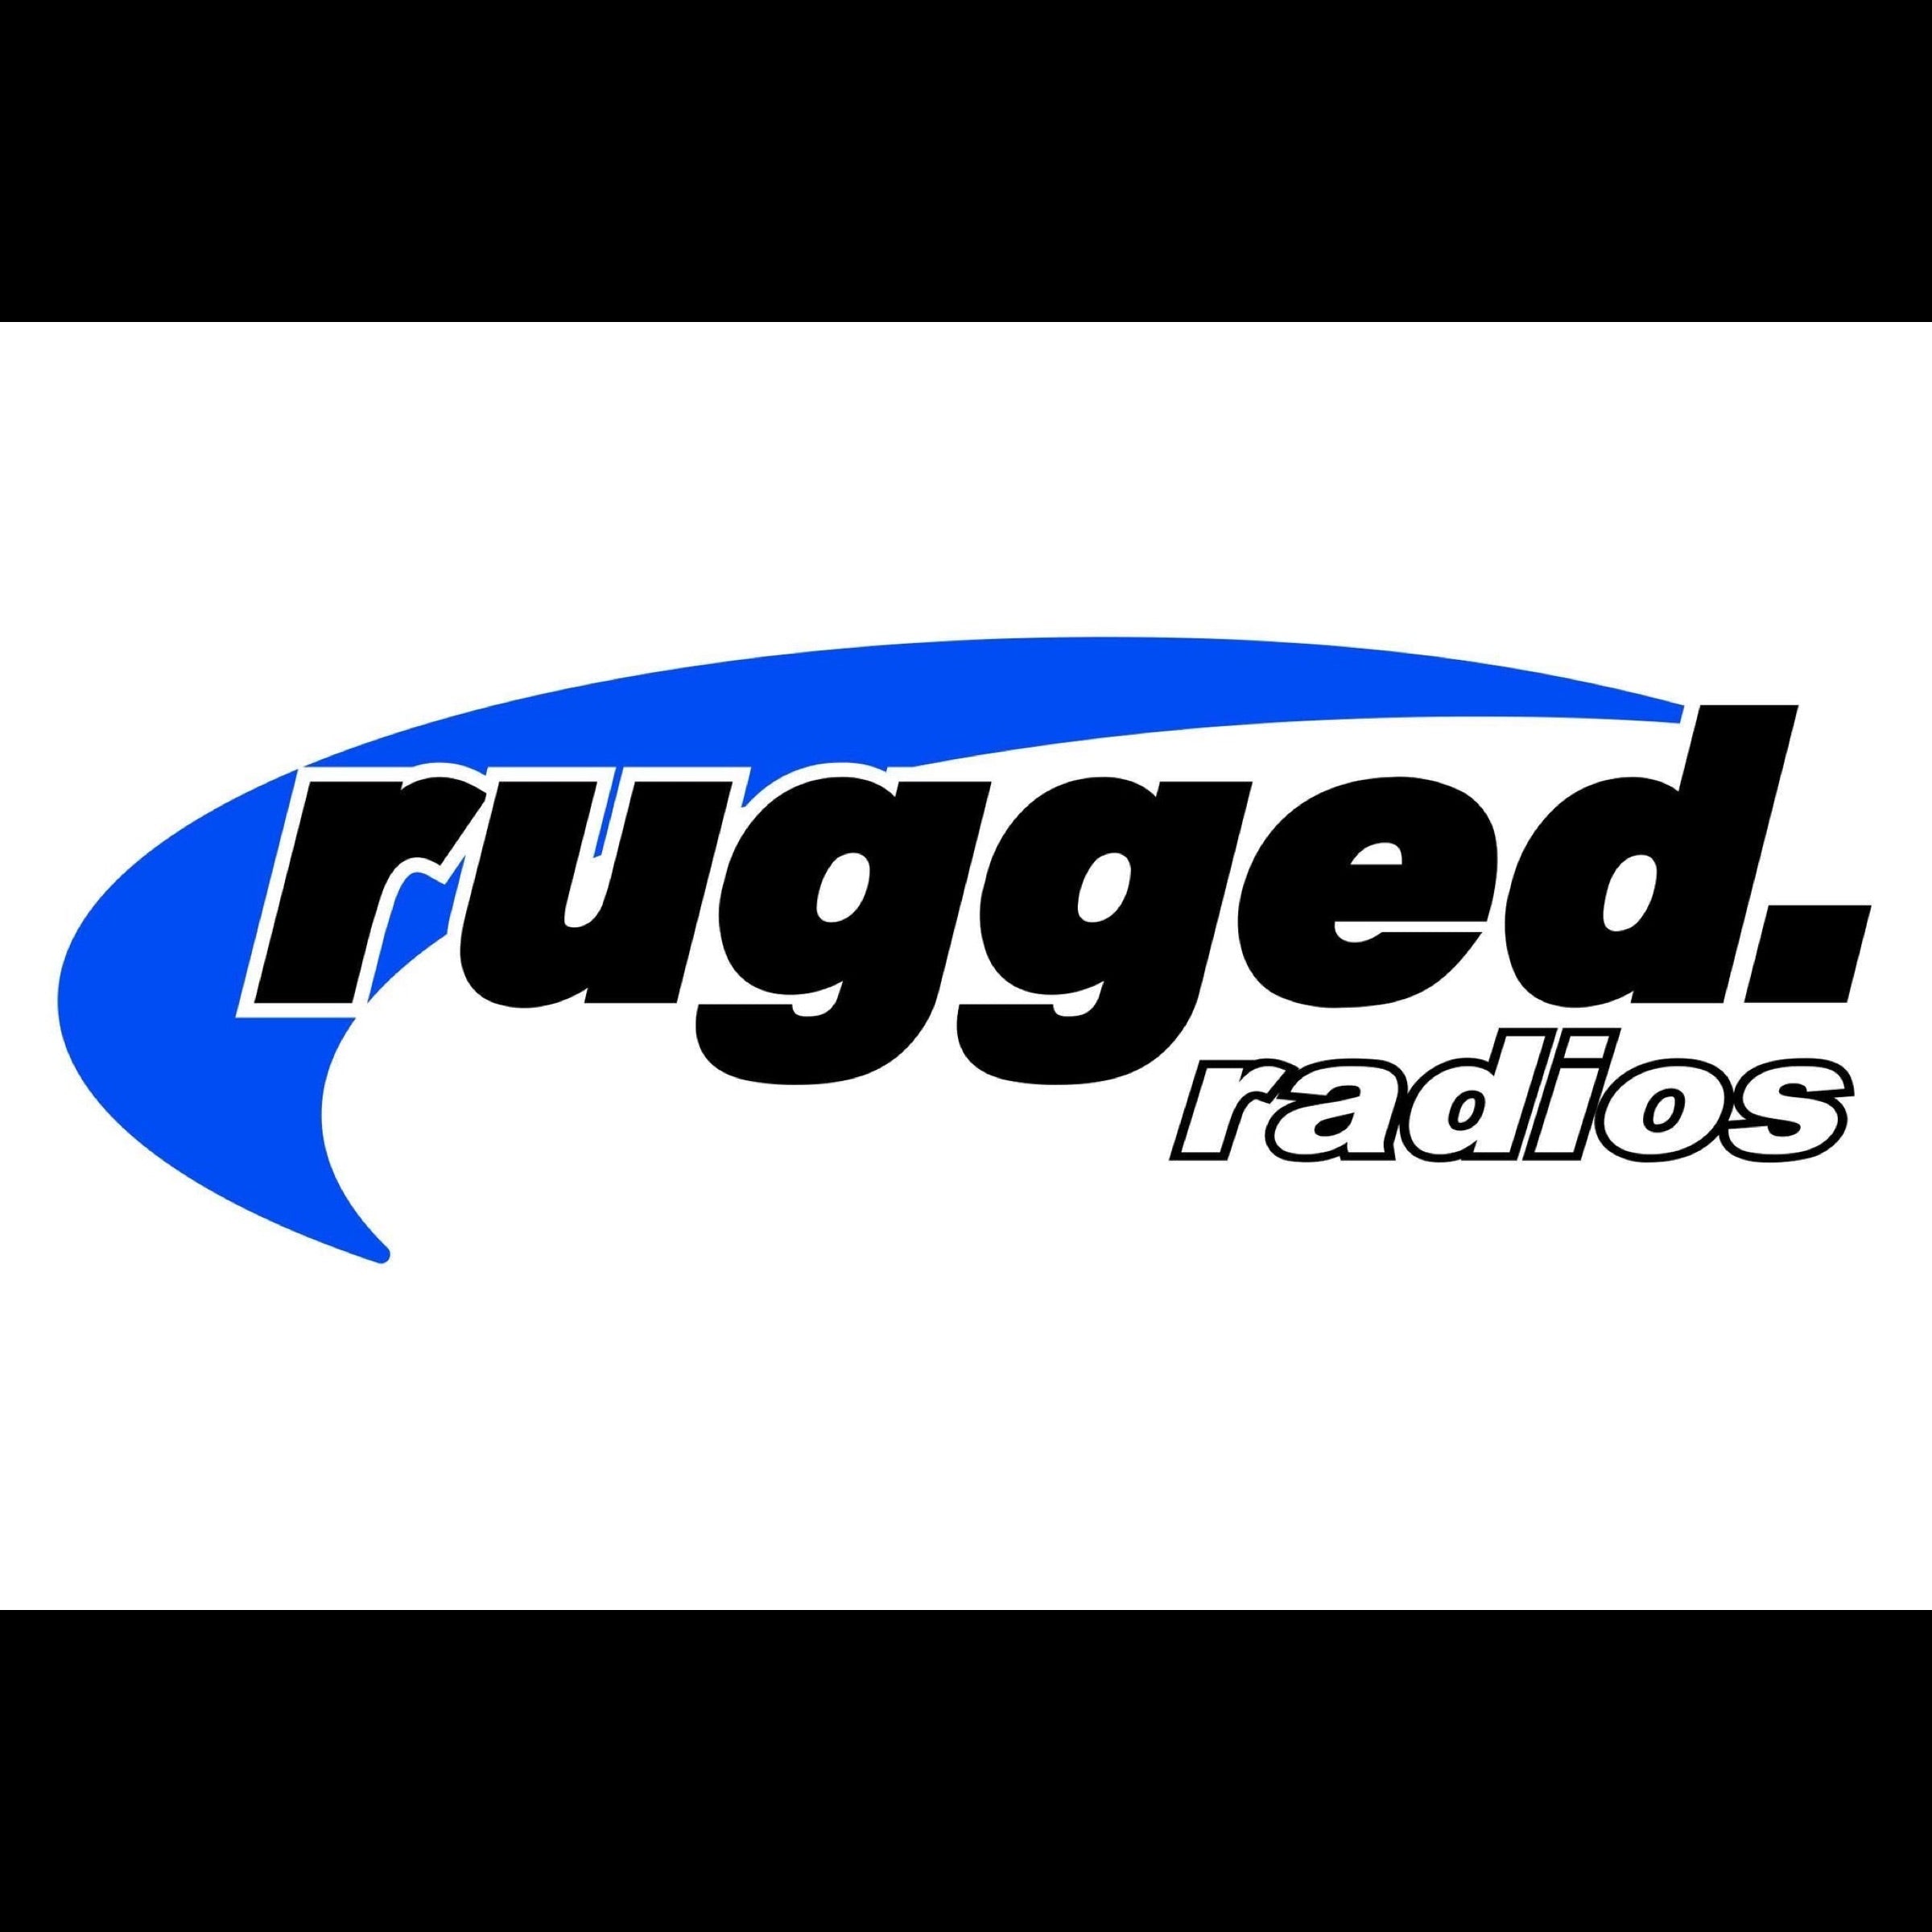 Rugged Radios logo with white background